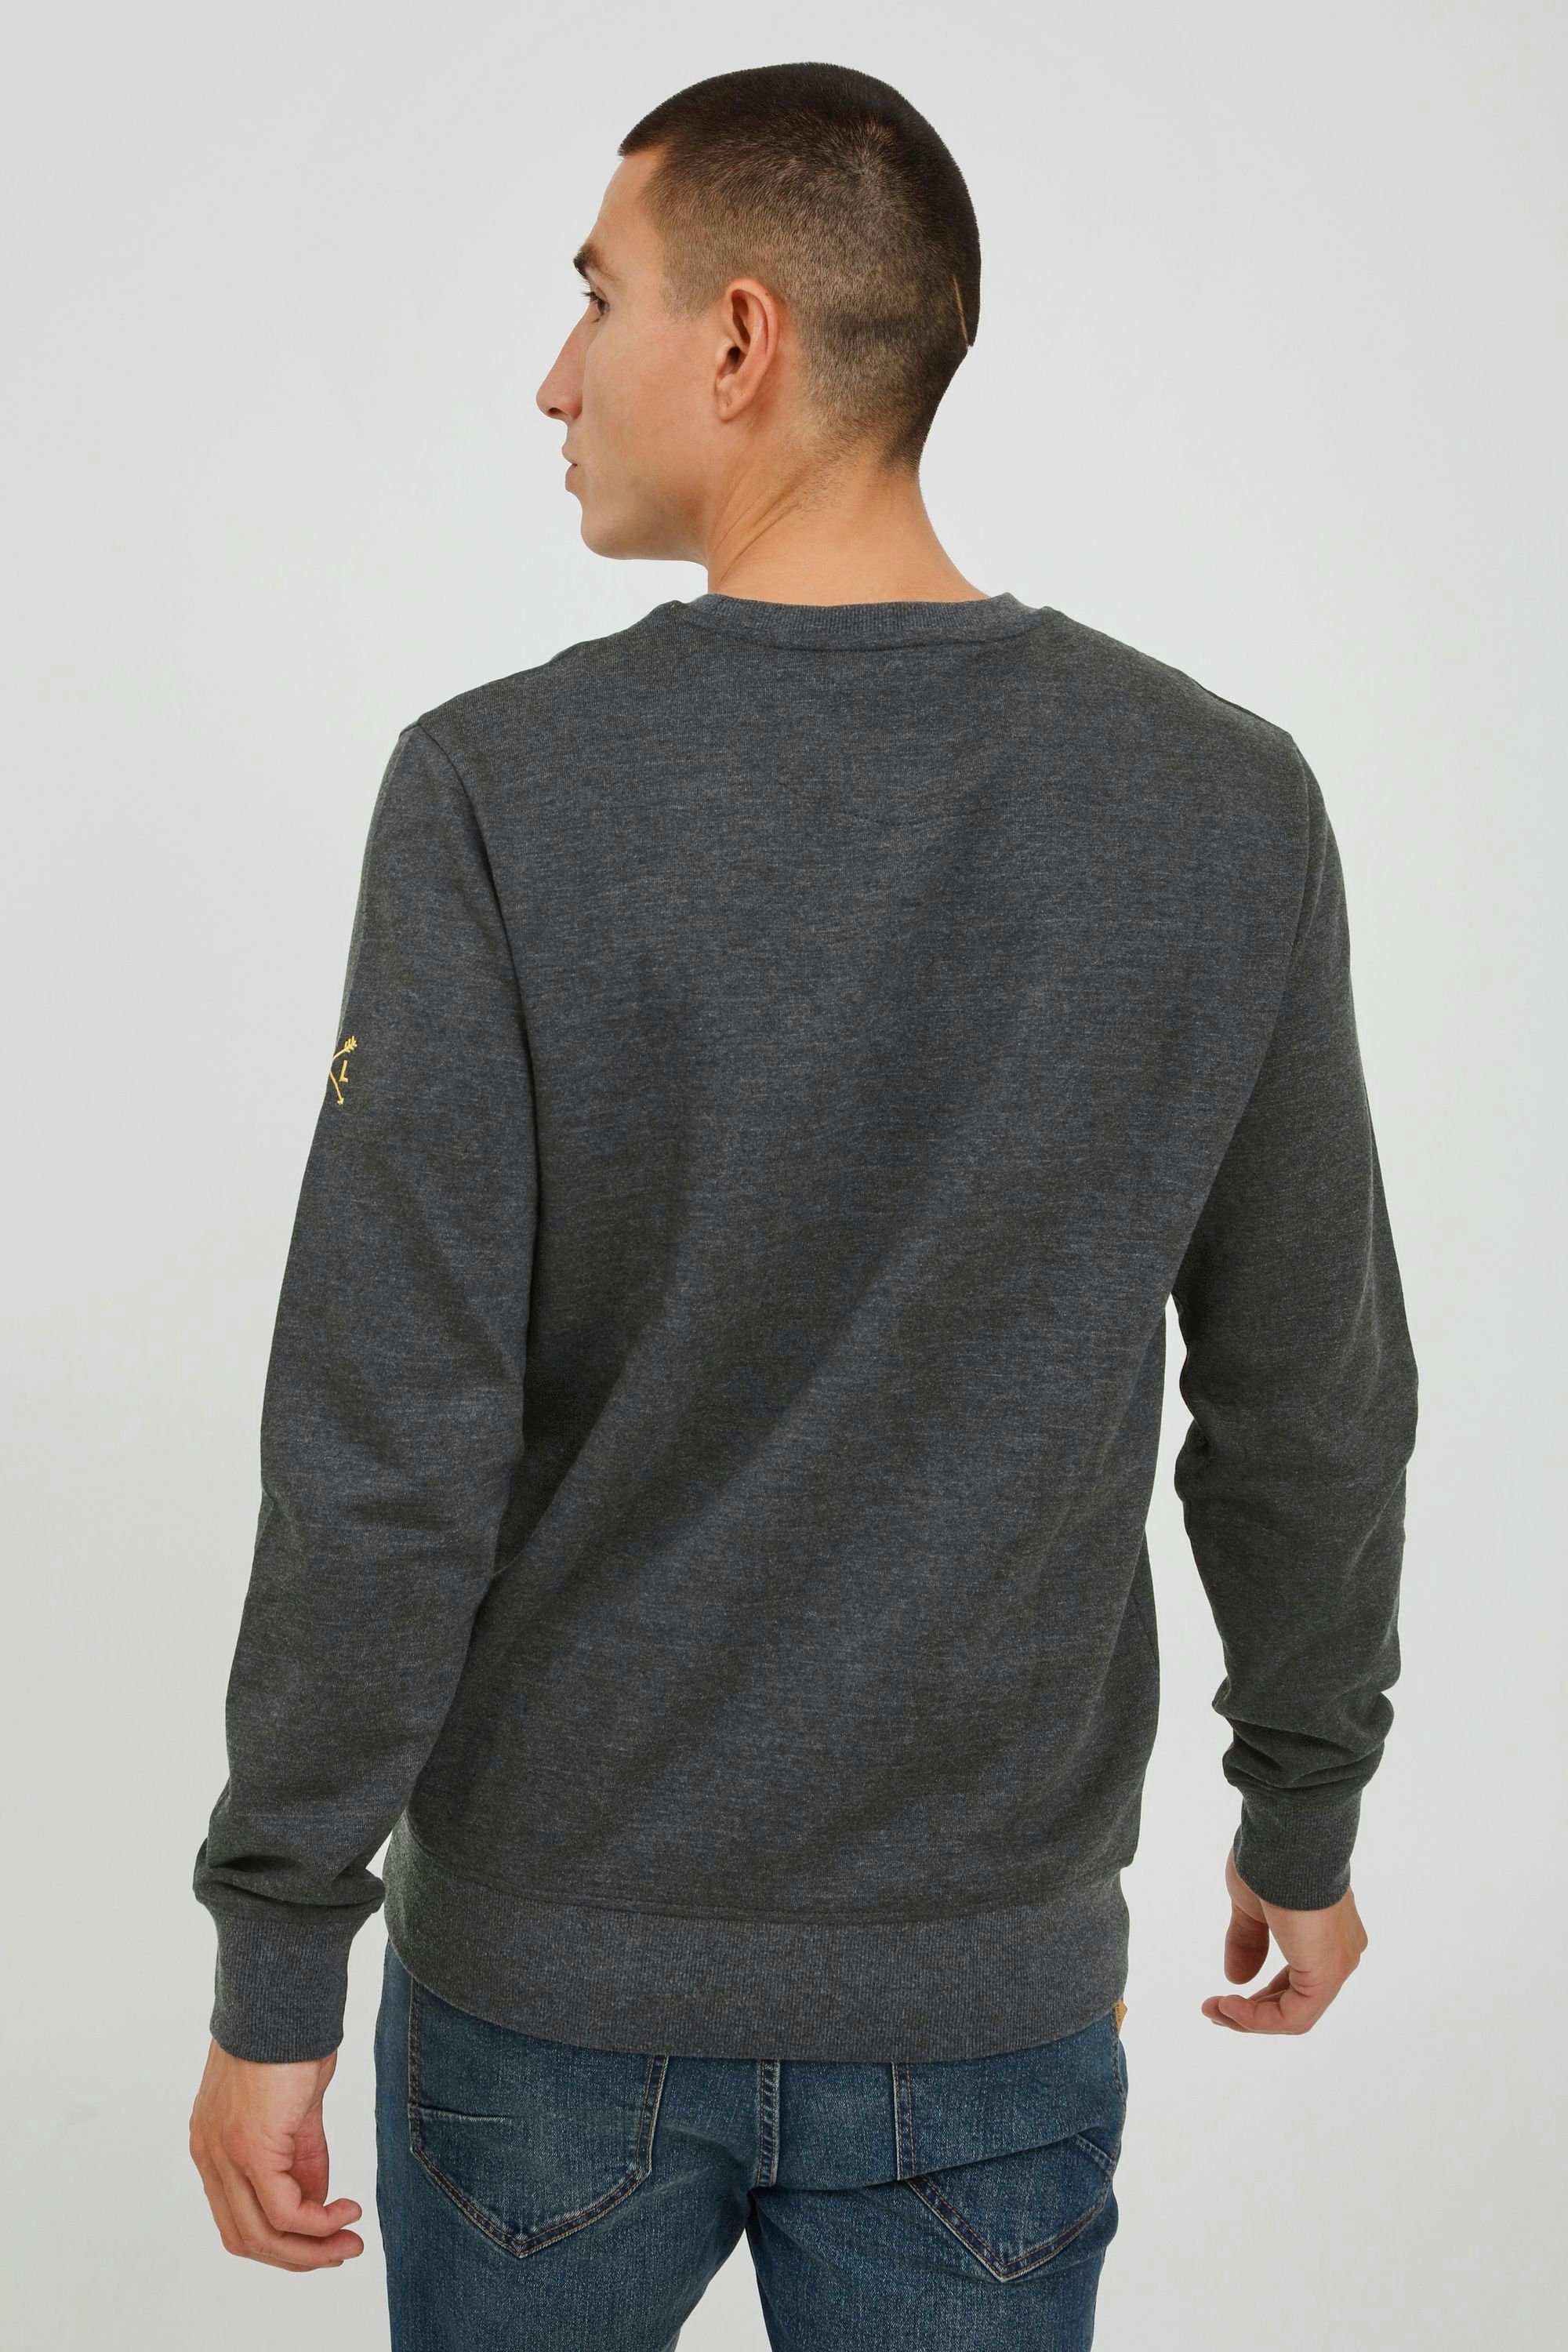 Rundhalsausschnitt SDKani !Solid Sweatshirt Dark mit Grey Melange (1940071) Sweatshirt